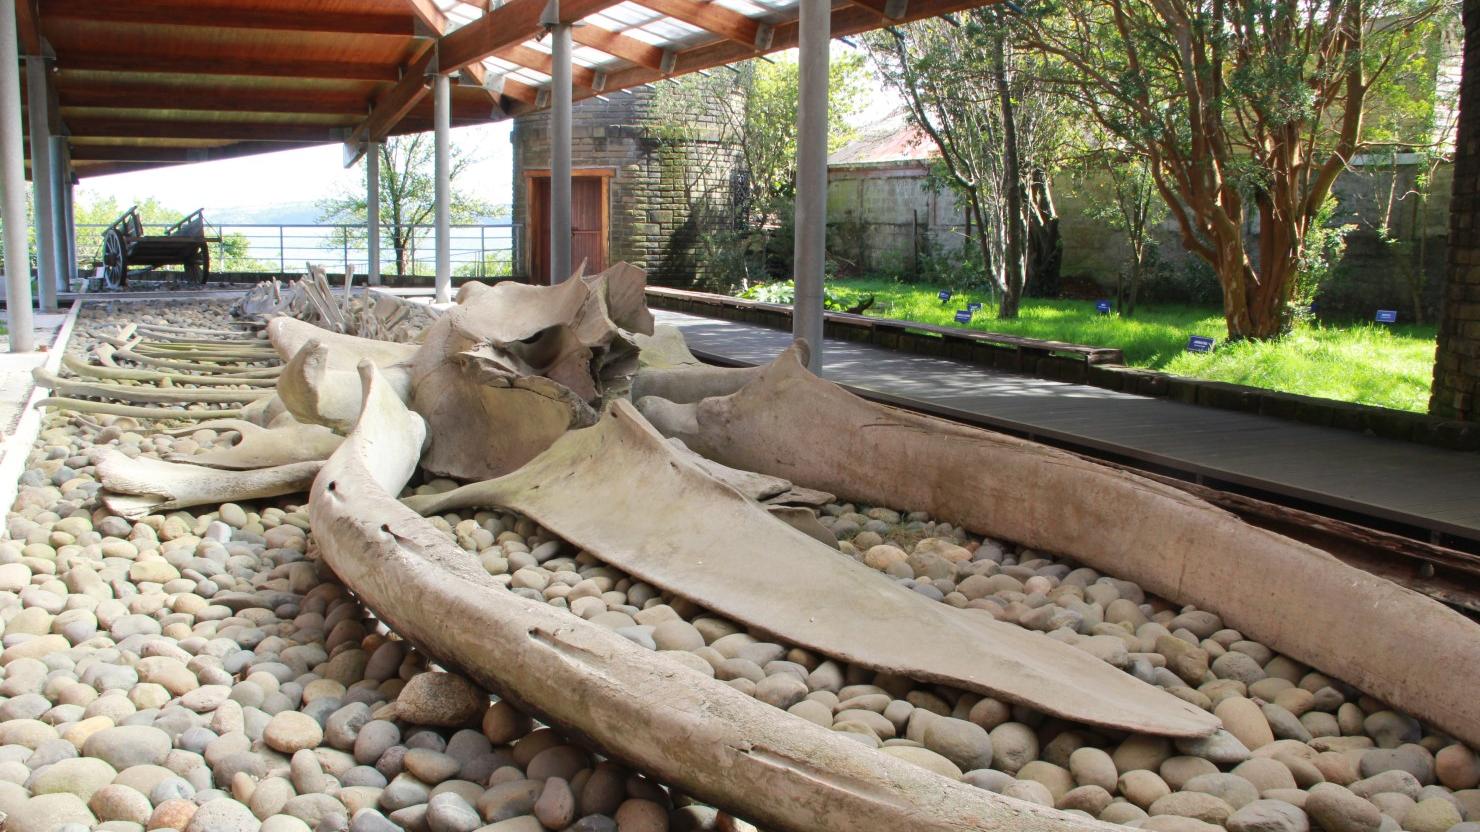 Esqueleto de ballena azul, este ejemplar fue encontrado en las costas de Pumillahue (Ancud) en 2006. Actualmente se exhibe en el patio del museo.